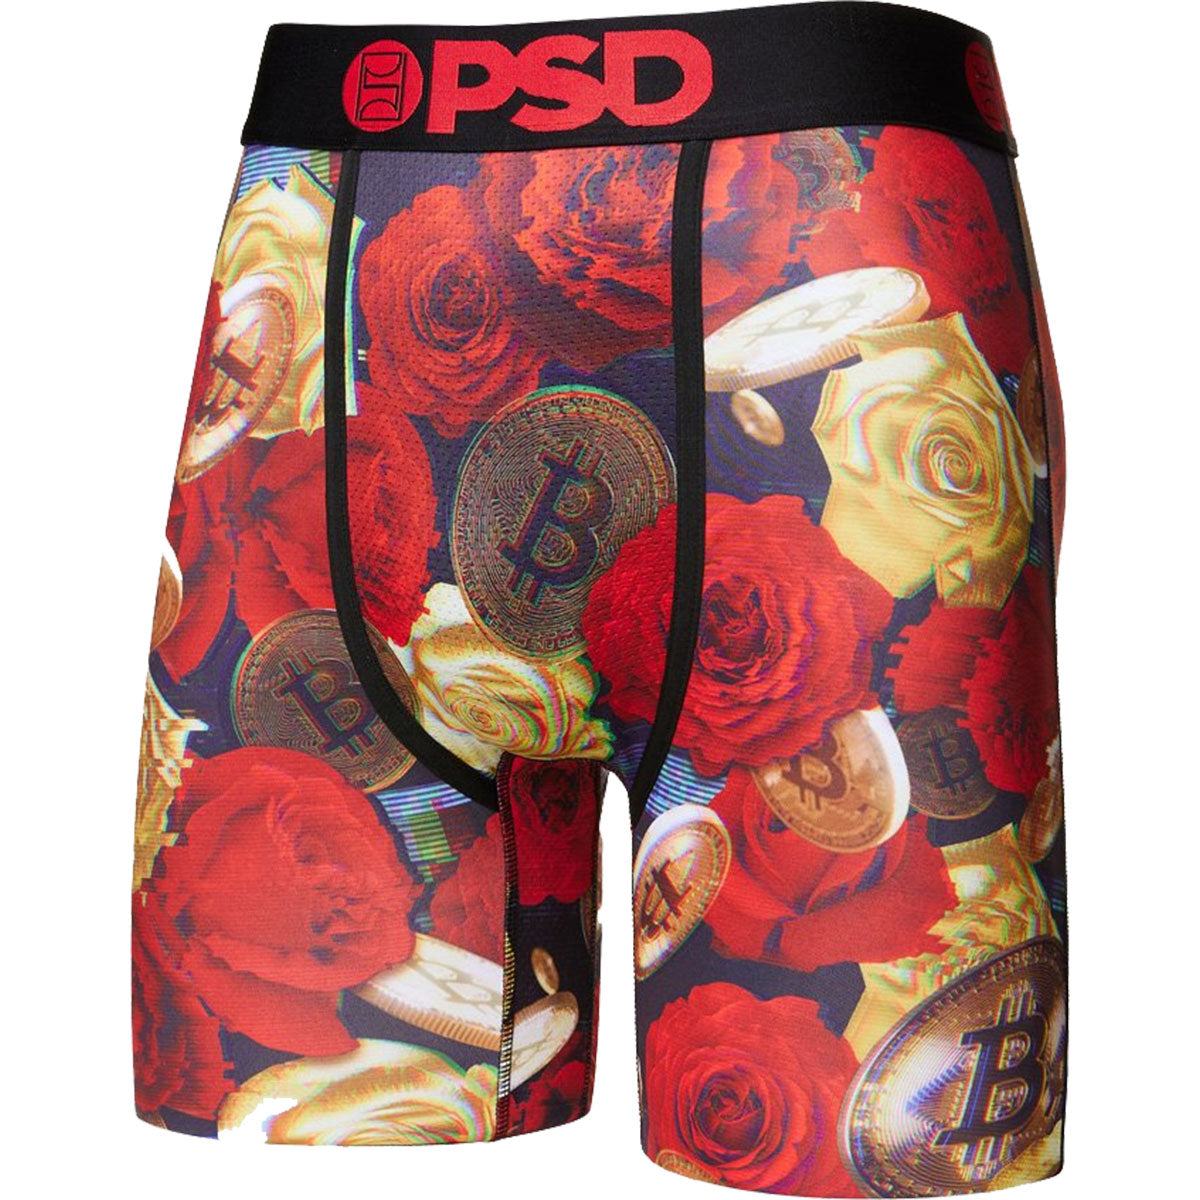 PSD Magnum All Over Boy Shorts Women's Bottom Underwear